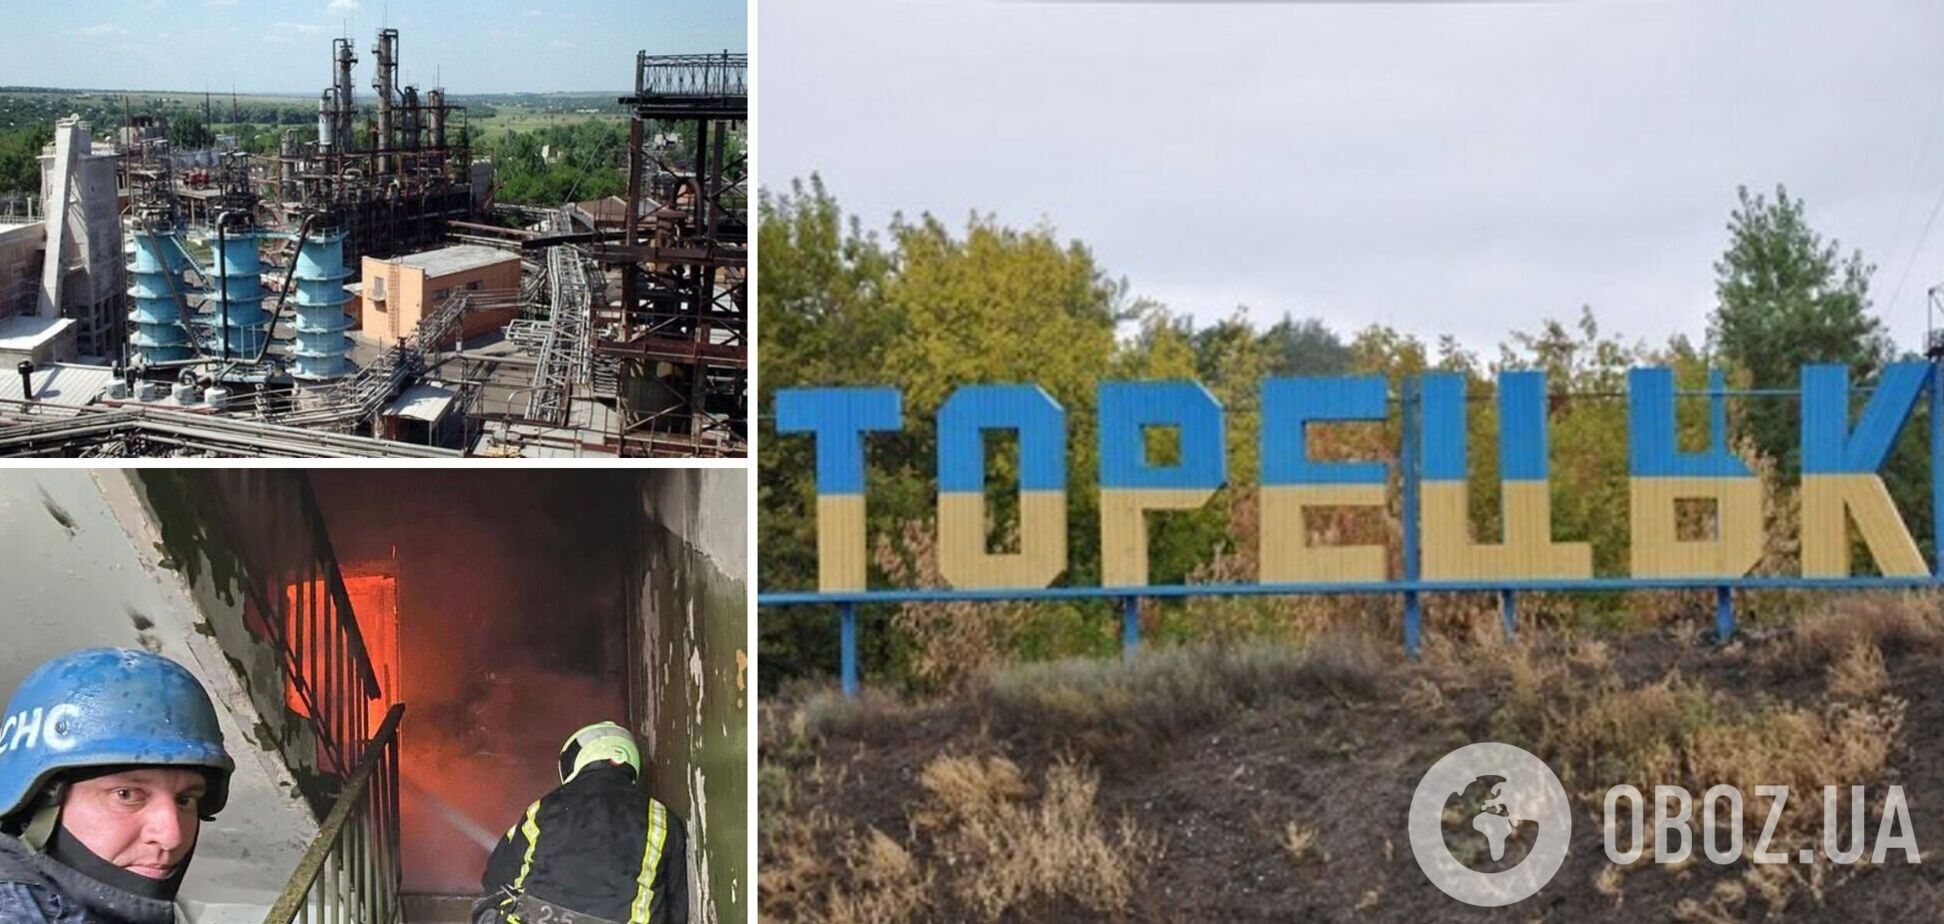 Российские оккупанты обстреляли фенольный завод в Донецкой области